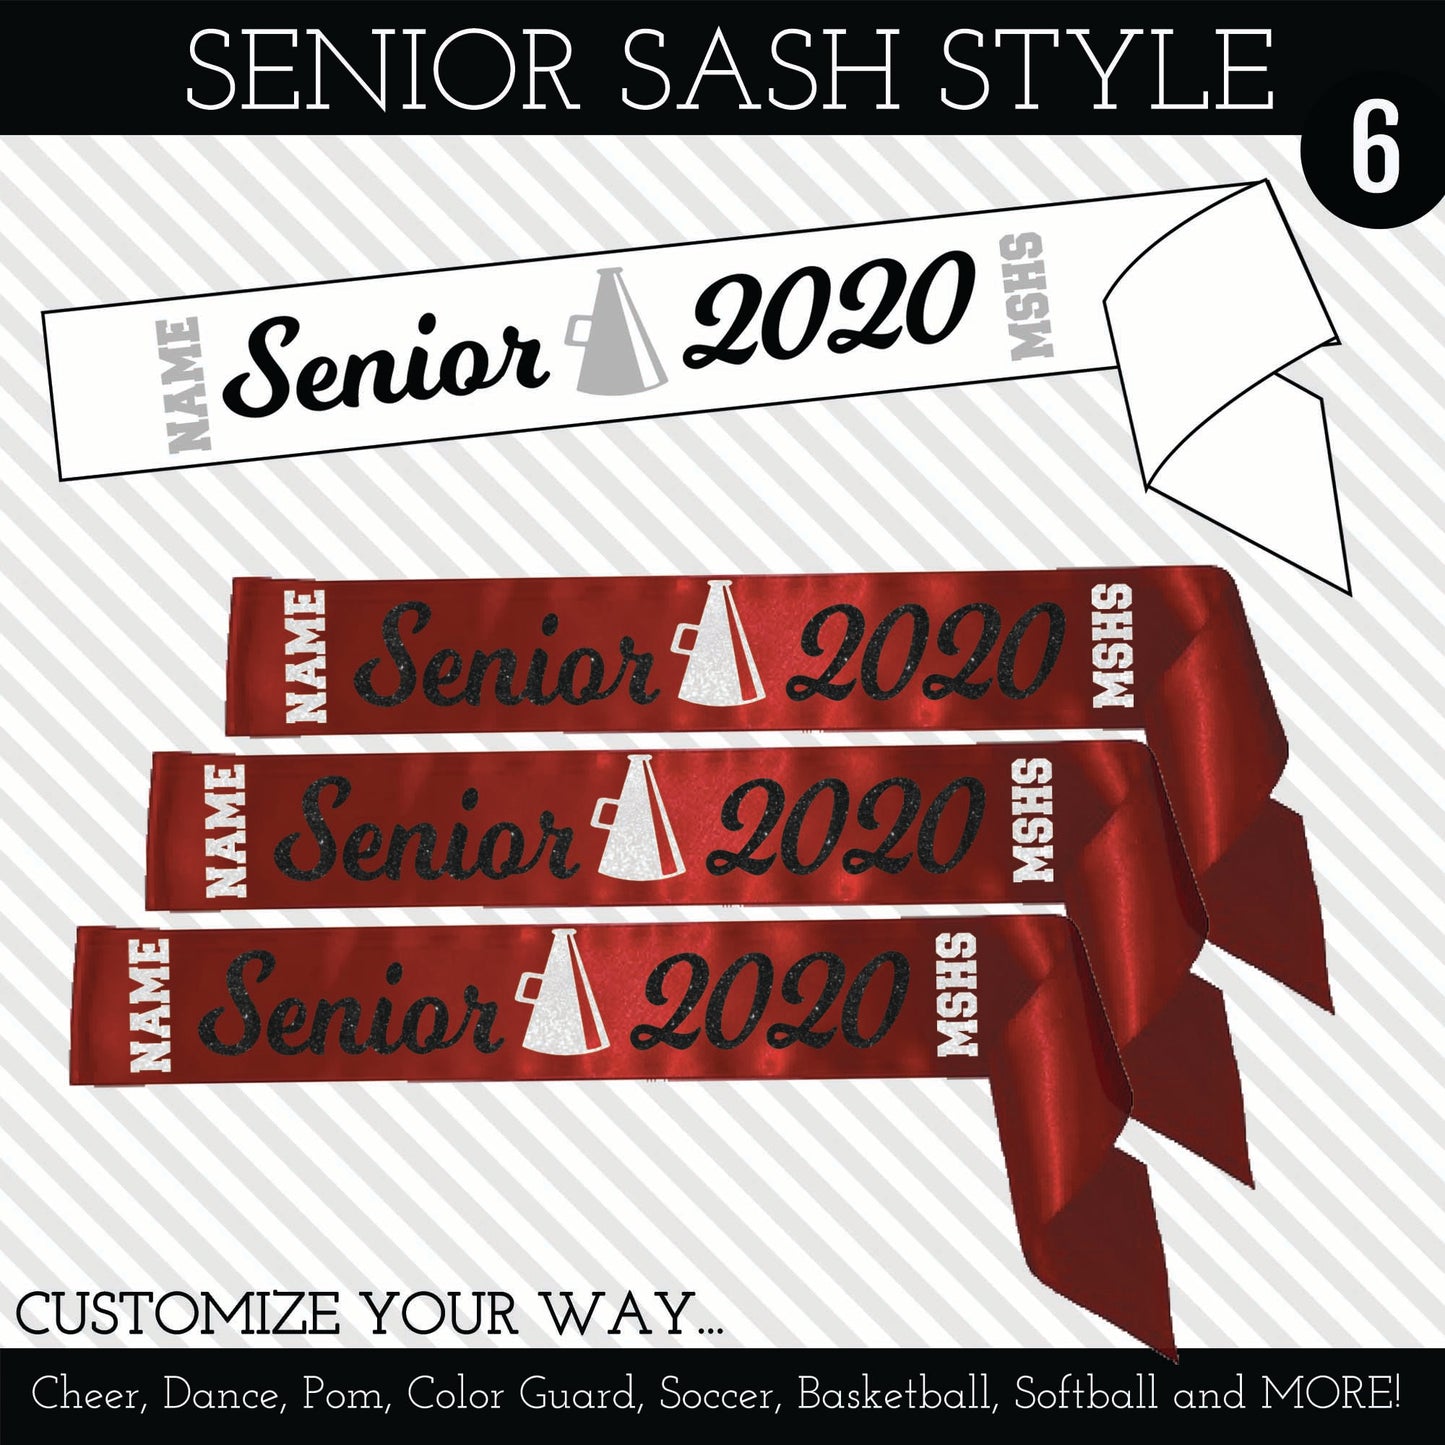 Senior Sash Style 6